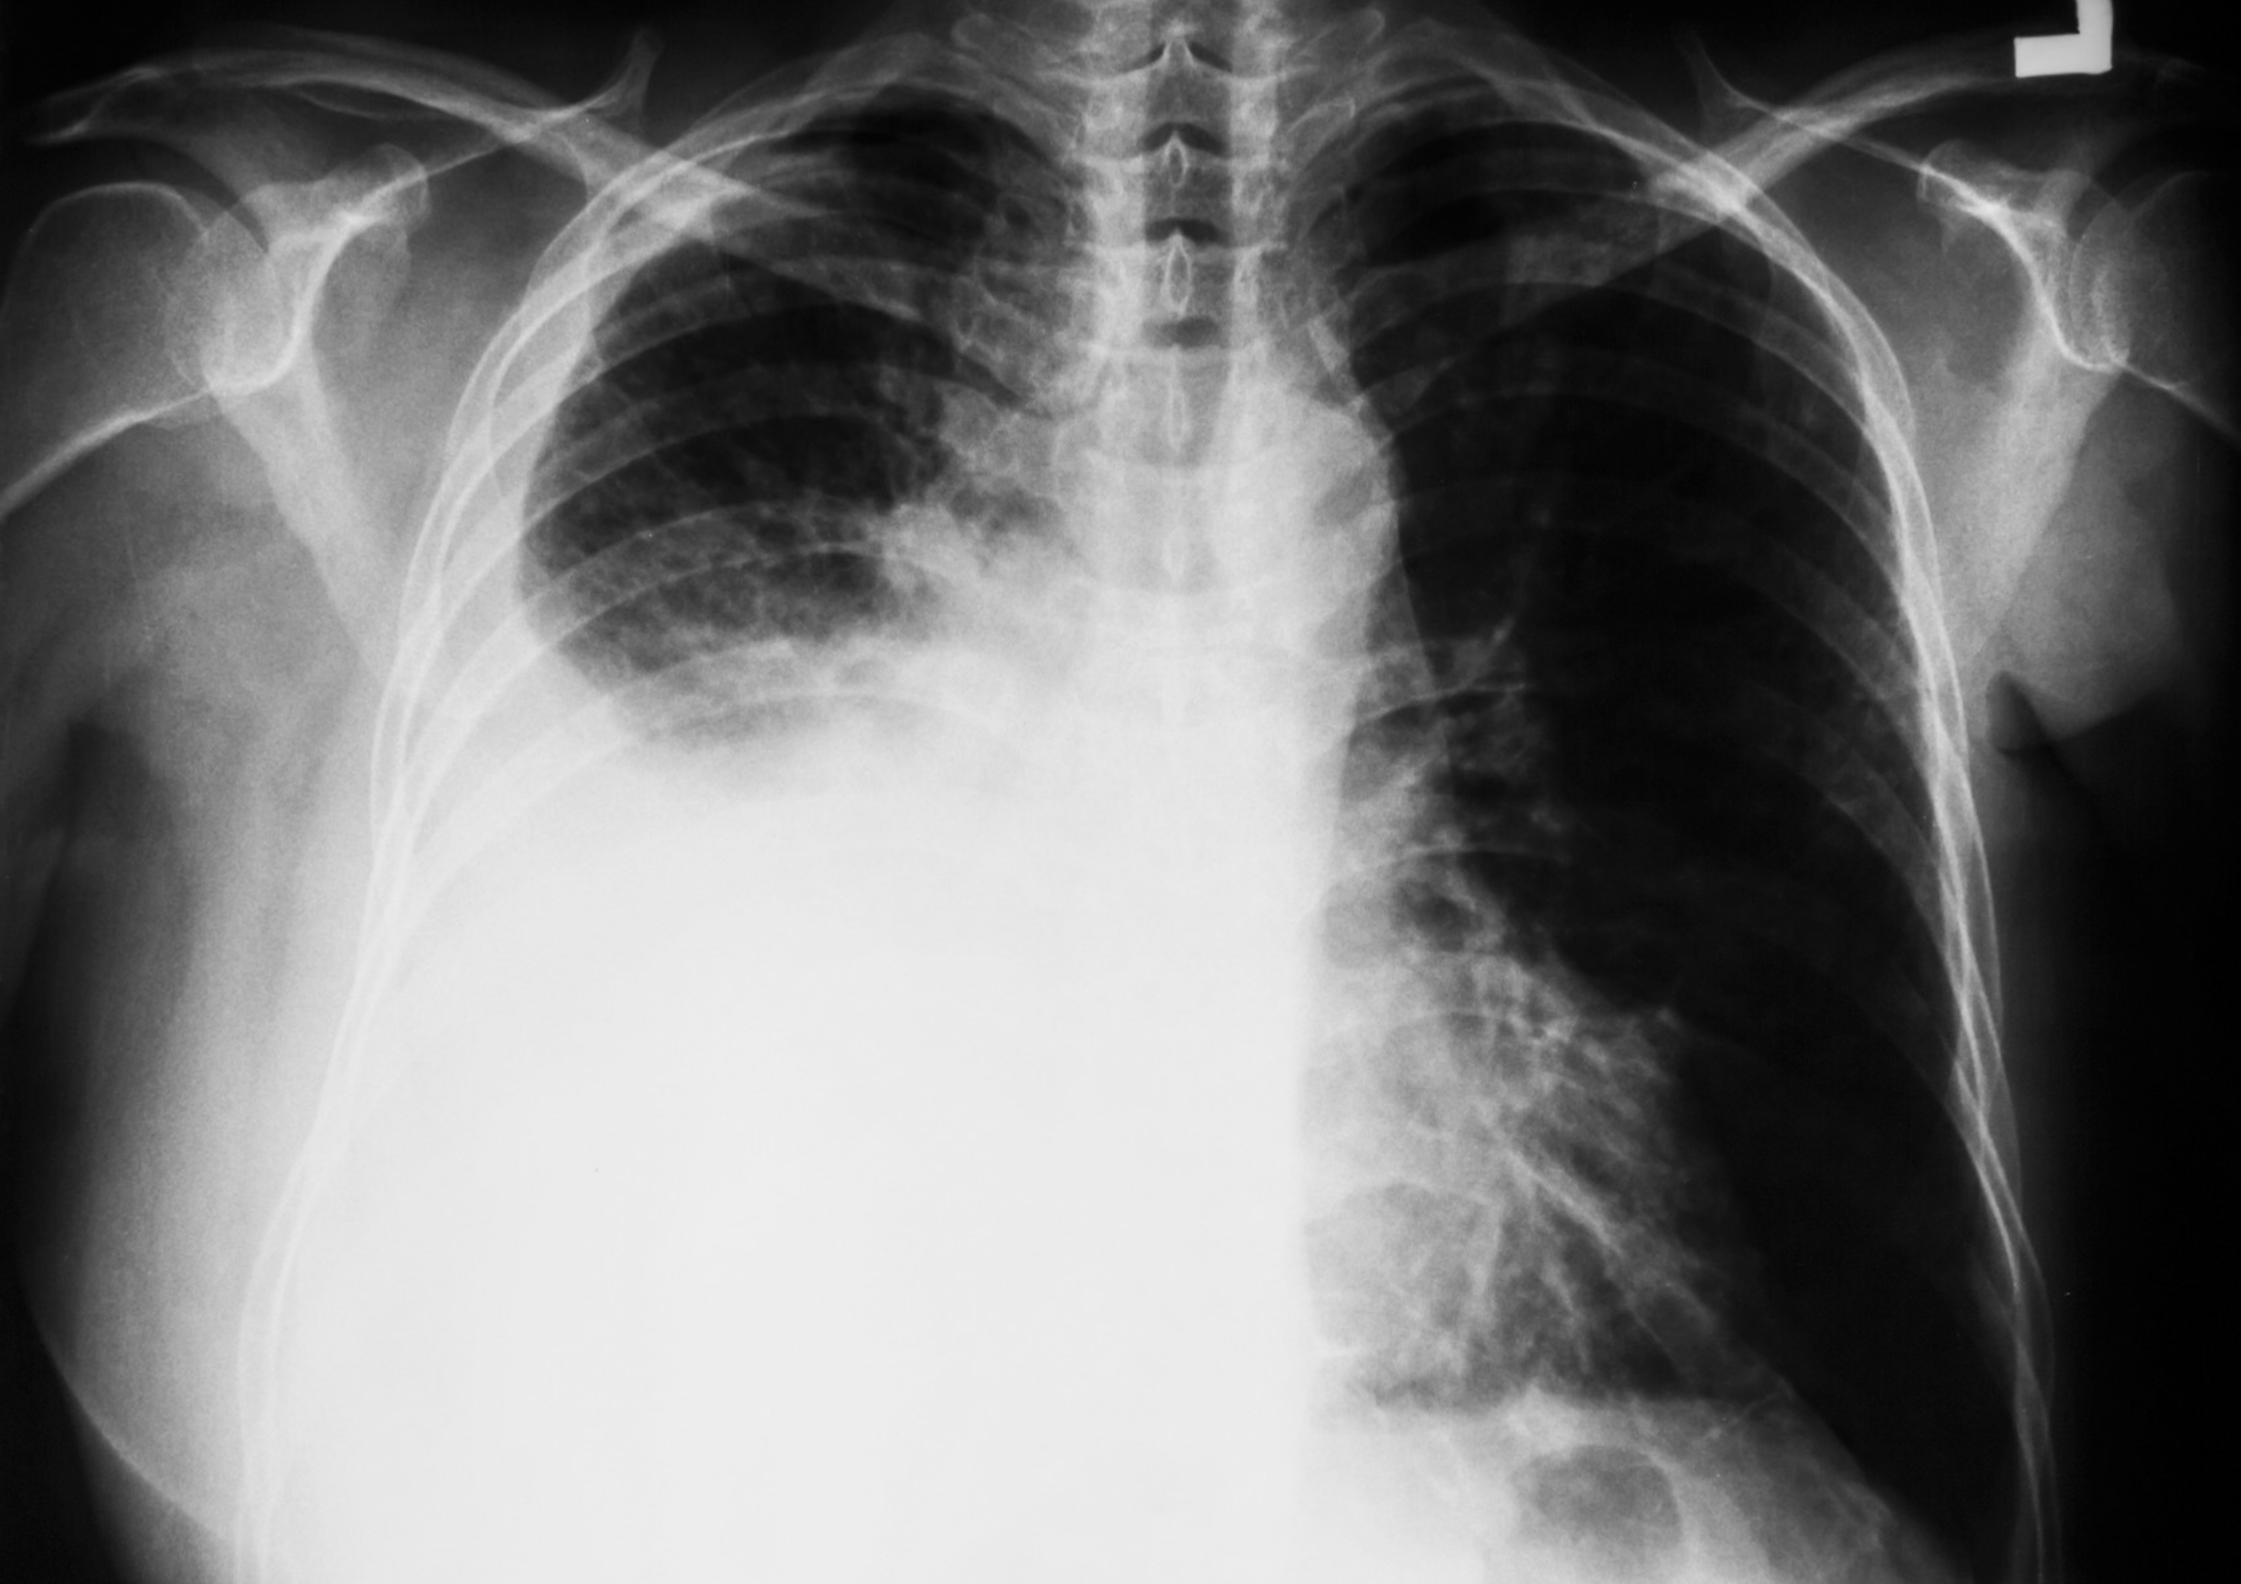 chest x ray pleural effusion